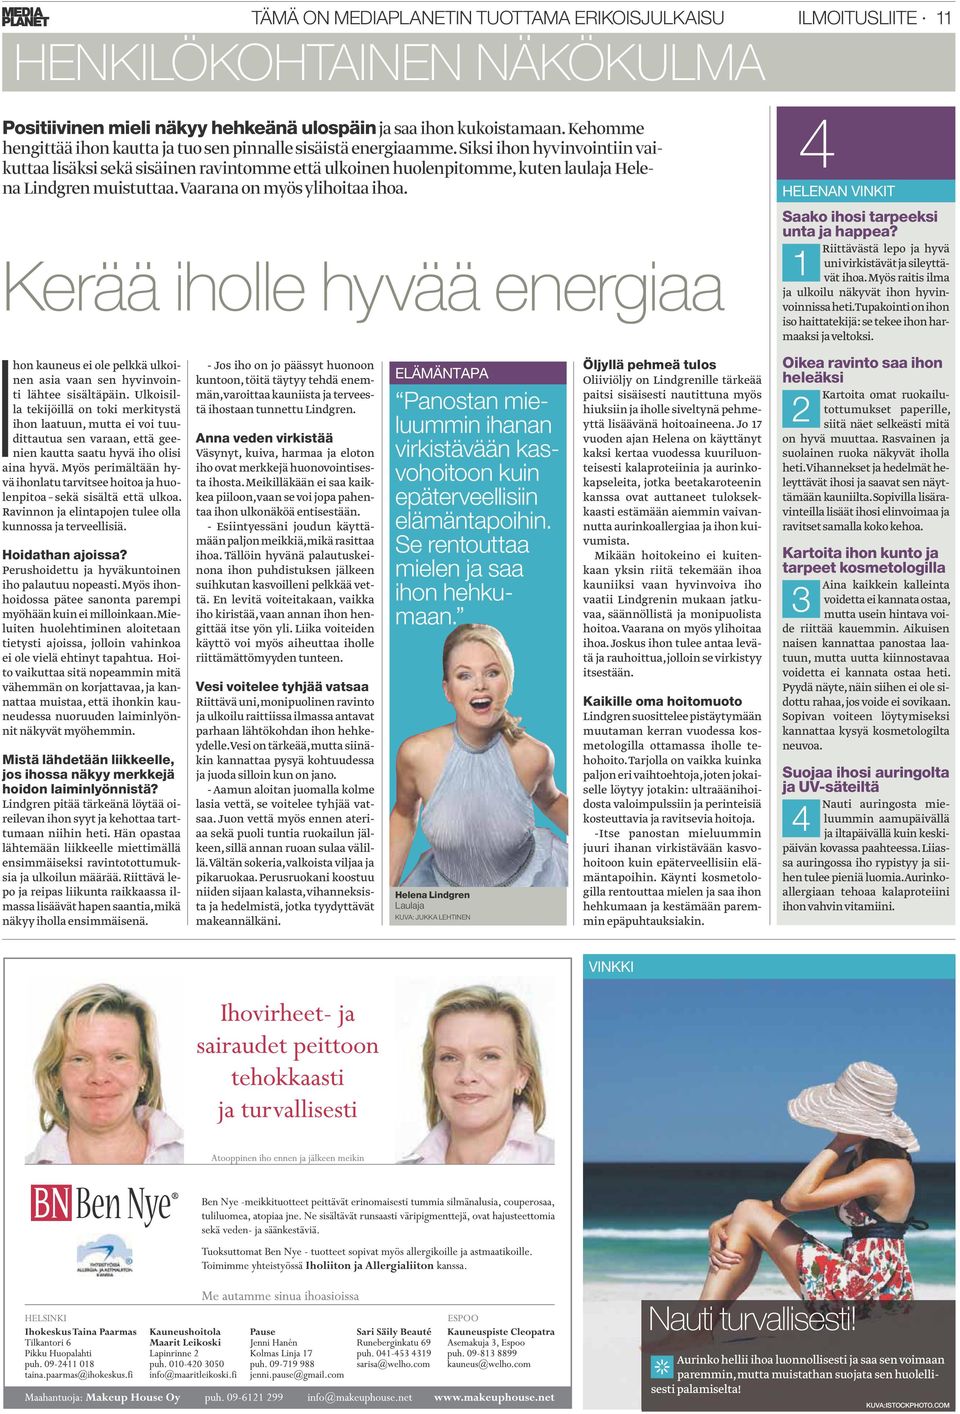 Siksi ihon hyvinvointiin vaikuttaa lisäksi sekä sisäinen ravintomme että ulkoinen huolenpitomme, kuten laulaja Helena Lindgren muistuttaa. Vaarana on myös ylihoitaa ihoa.